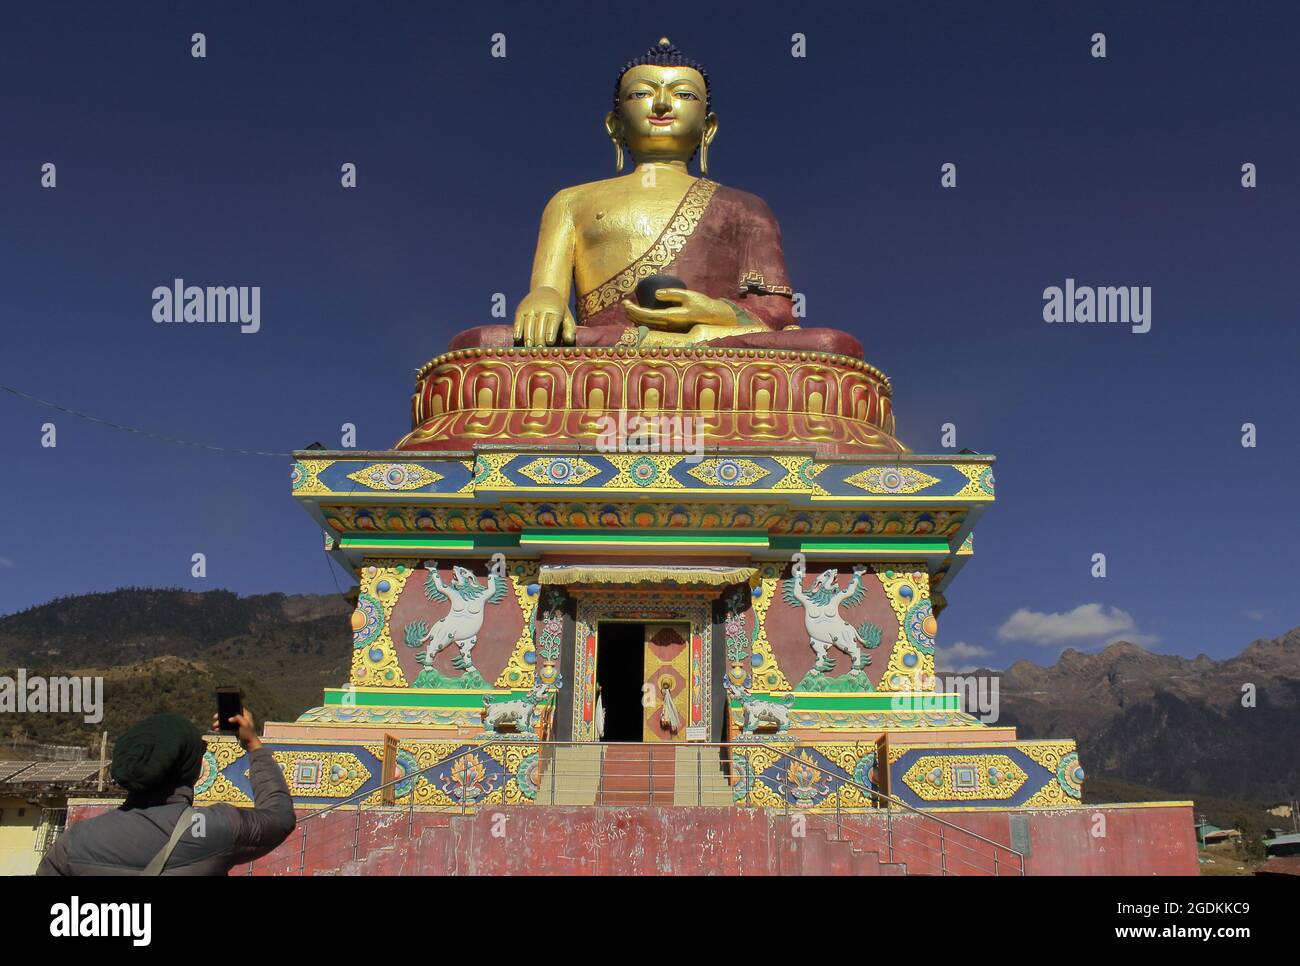 giant buddha statue of tawang in arunachal pradesh, north east india Stock Photo